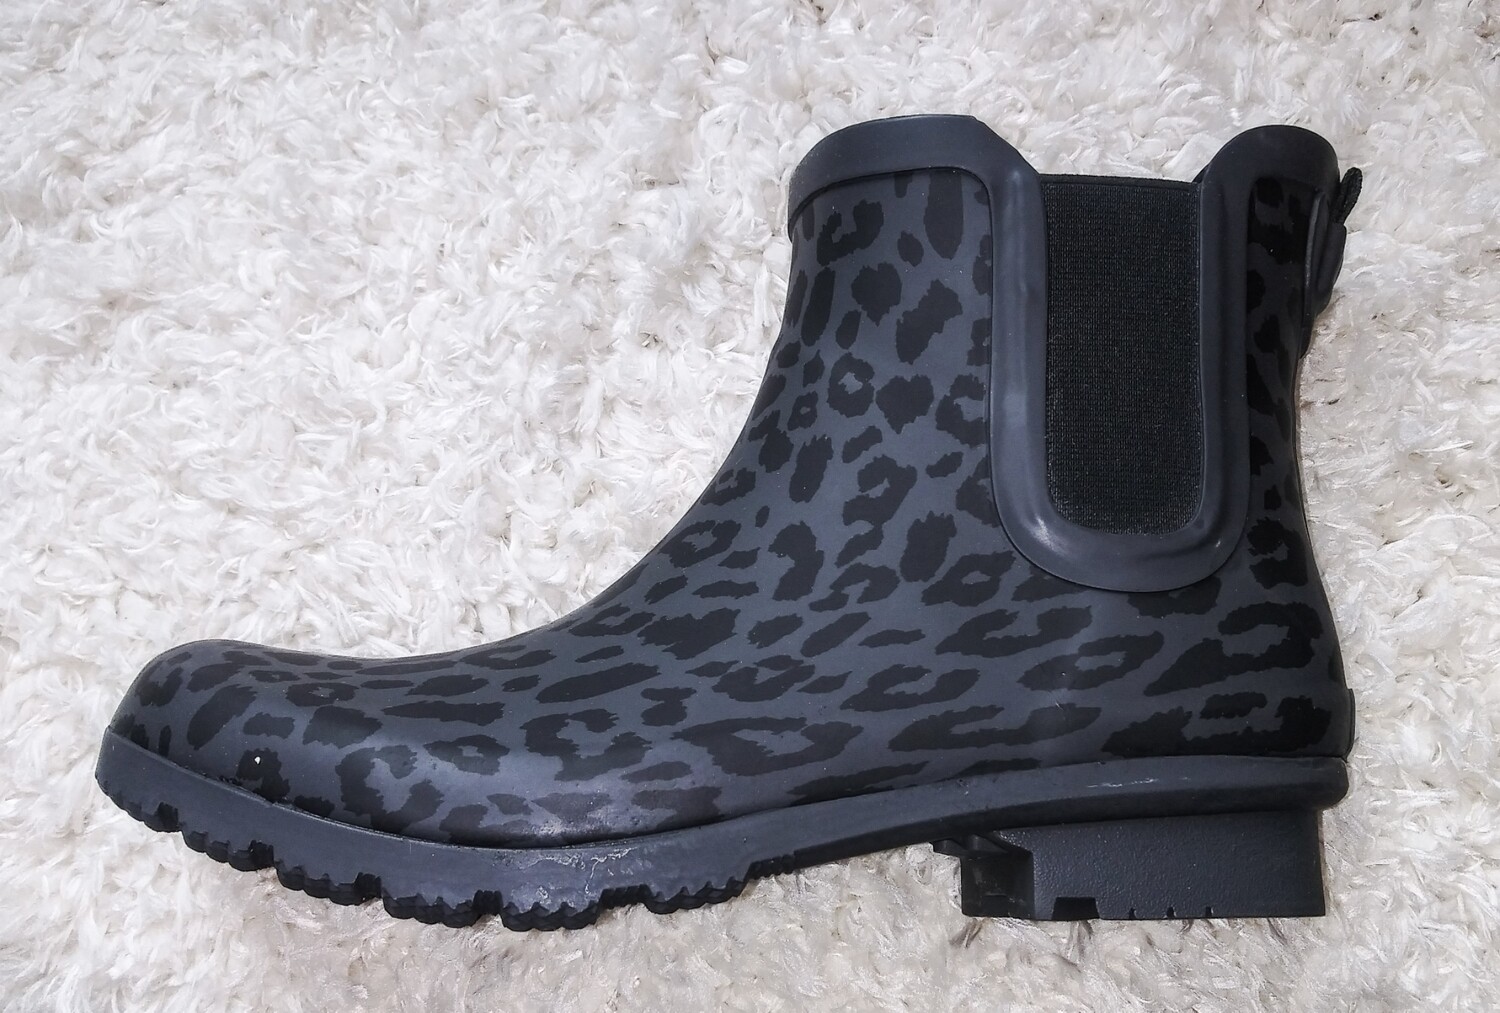 Cheetah print rain boots